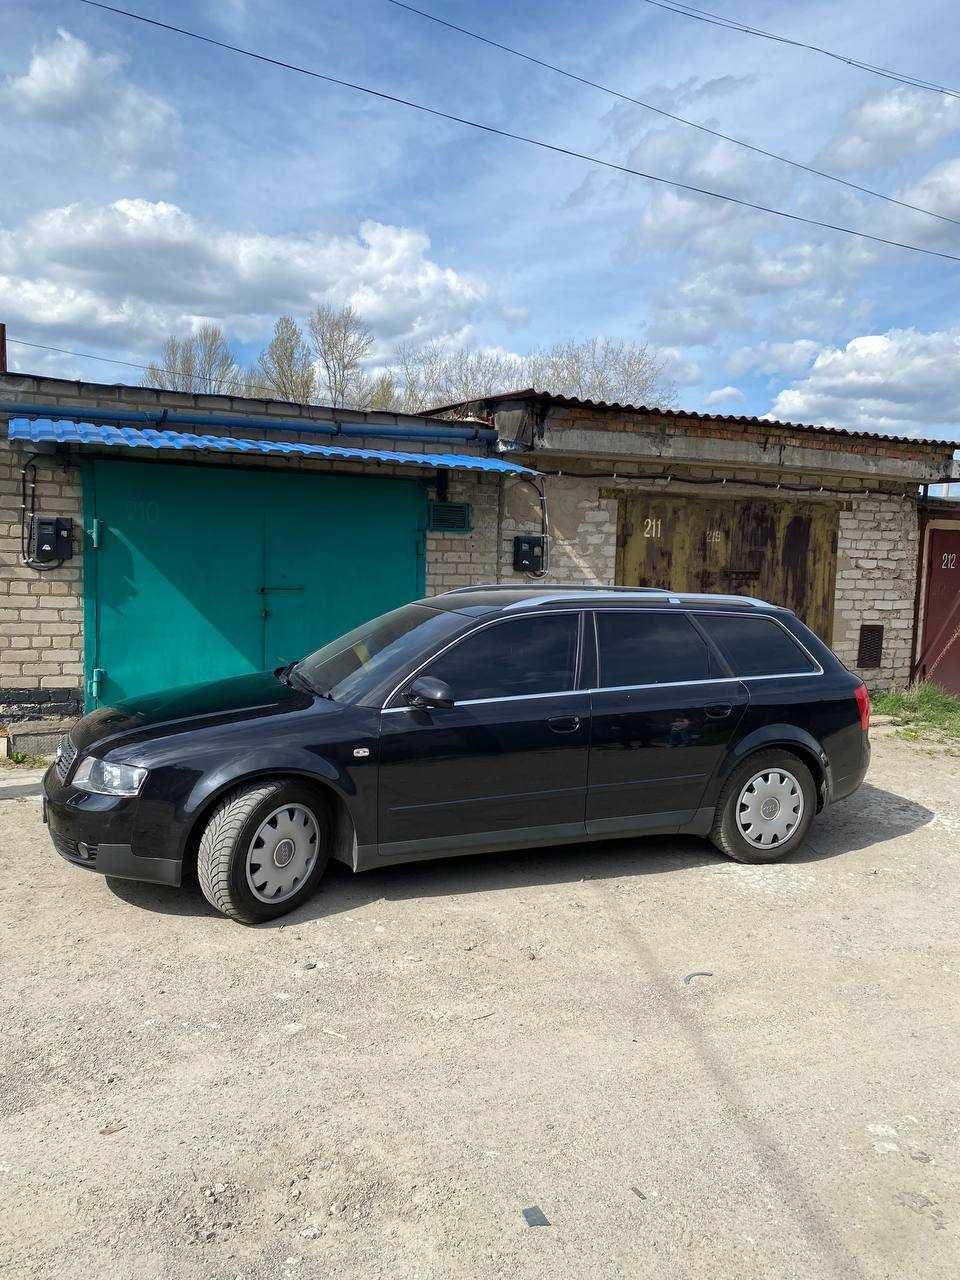 Продам  власне авто, в Україні один господар